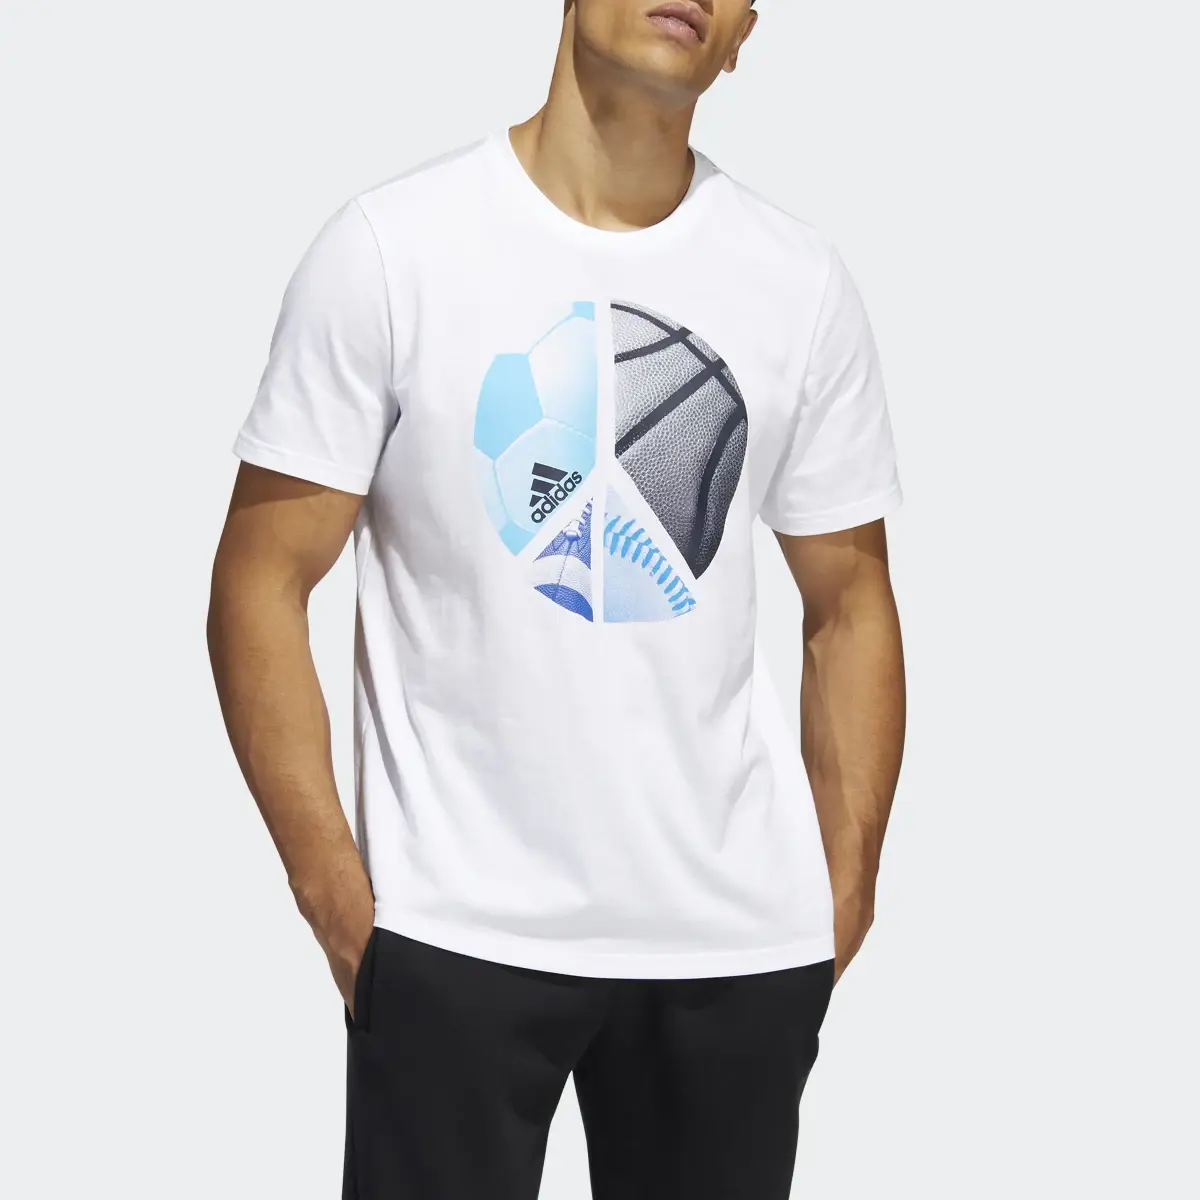 Adidas Camiseta Multiplicity Graphic. 1